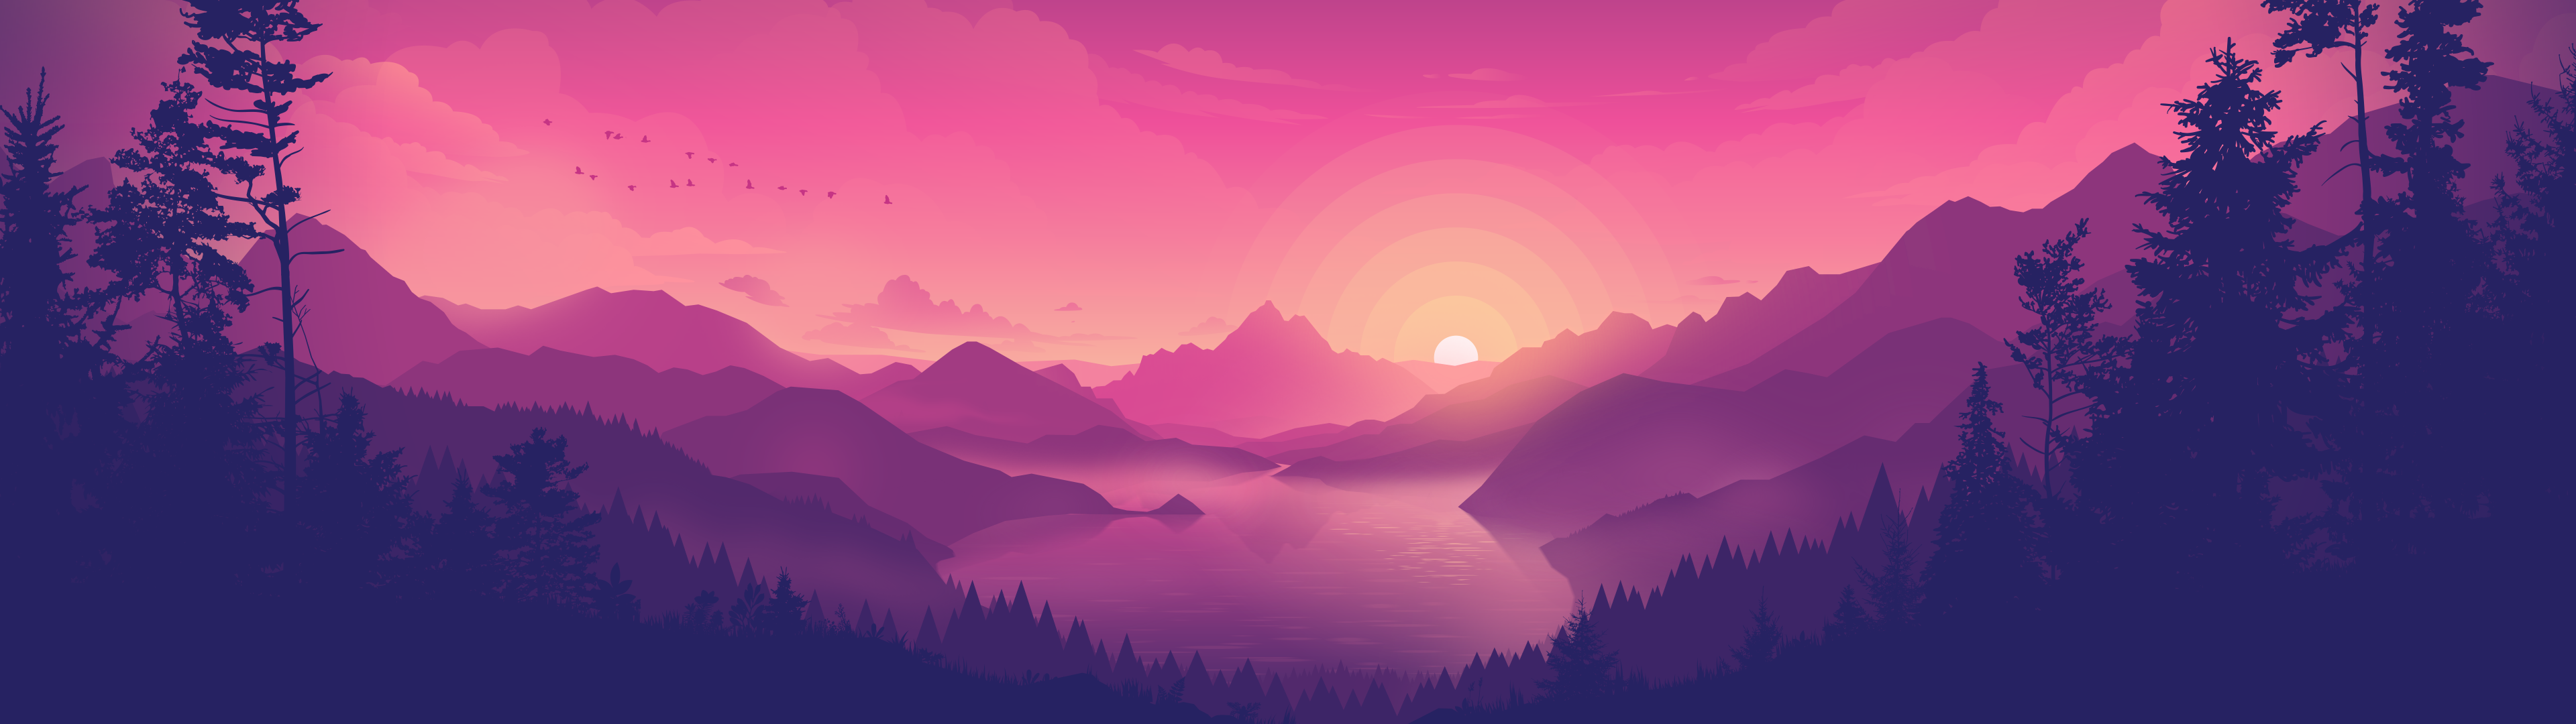 Hình nền hồ nước mặt trời lặn màu hồng: Tưởng tượng mình đang đắm mình trong không gian yên bình, tràn ngập màu hồng tươi sáng của bầu trời khi mặt trời lặn. Chẳng còn gì tuyệt vời hơn khi sử dụng hình nền hồ nước mặt trời lặn màu hồng này cho máy tính của bạn. Tải xuống ngay để trải nghiệm!